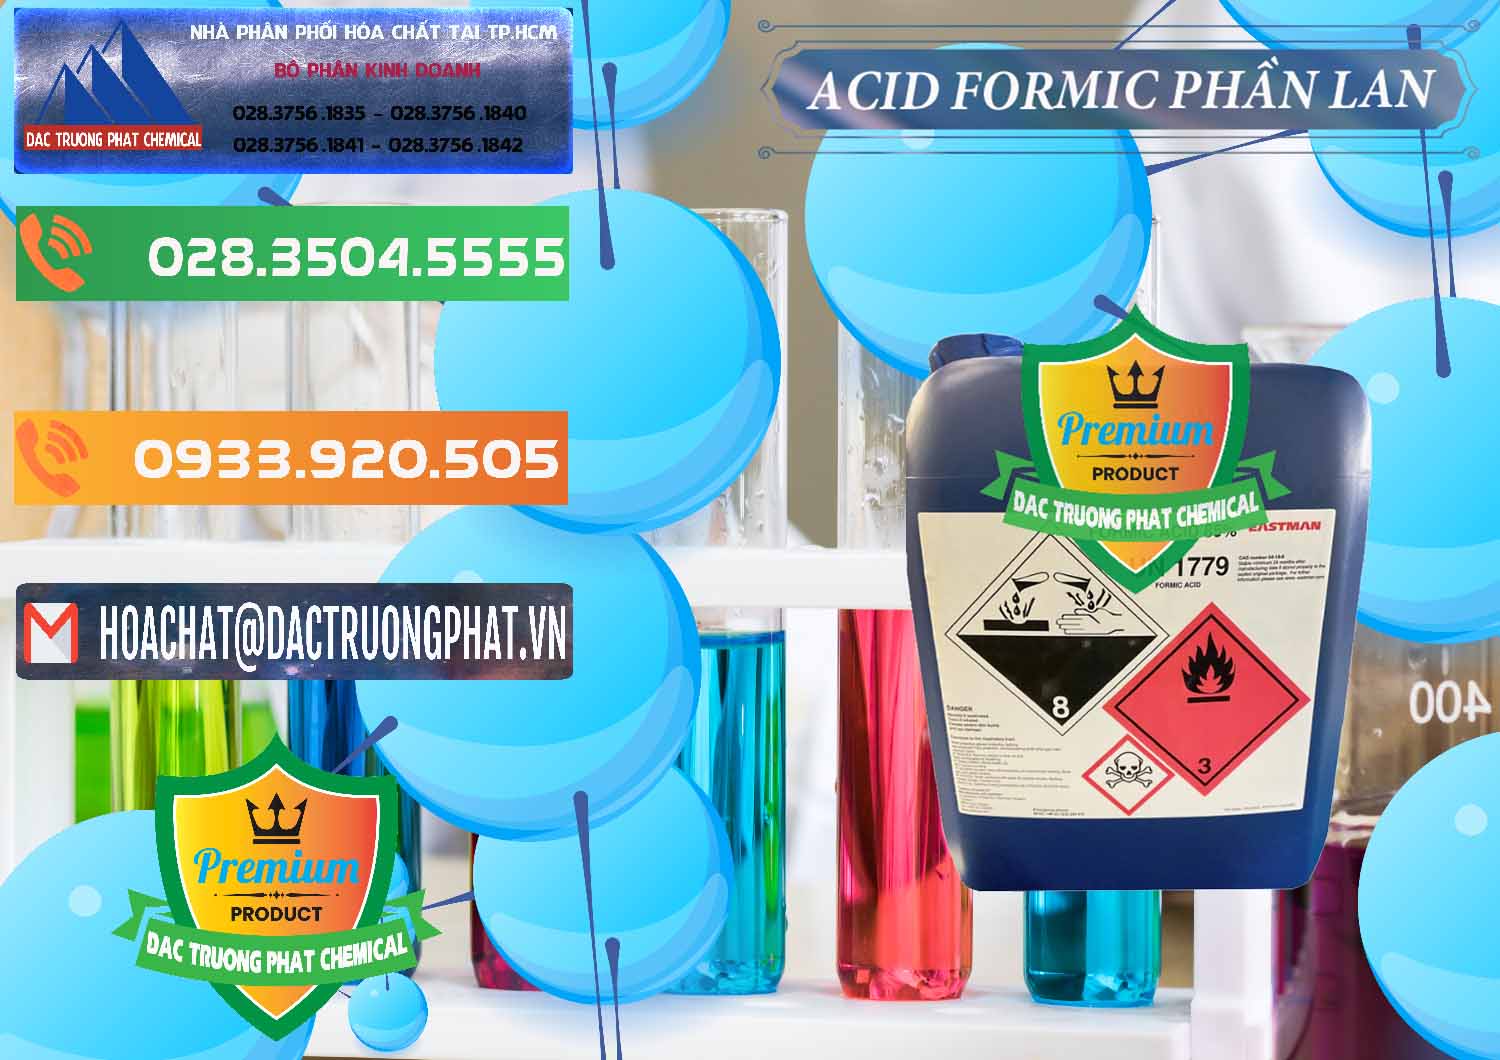 Cty chuyên bán & phân phối Acid Formic - Axit Formic Phần Lan Finland - 0376 - Cty chuyên phân phối _ kinh doanh hóa chất tại TP.HCM - hoachatxulynuoc.com.vn